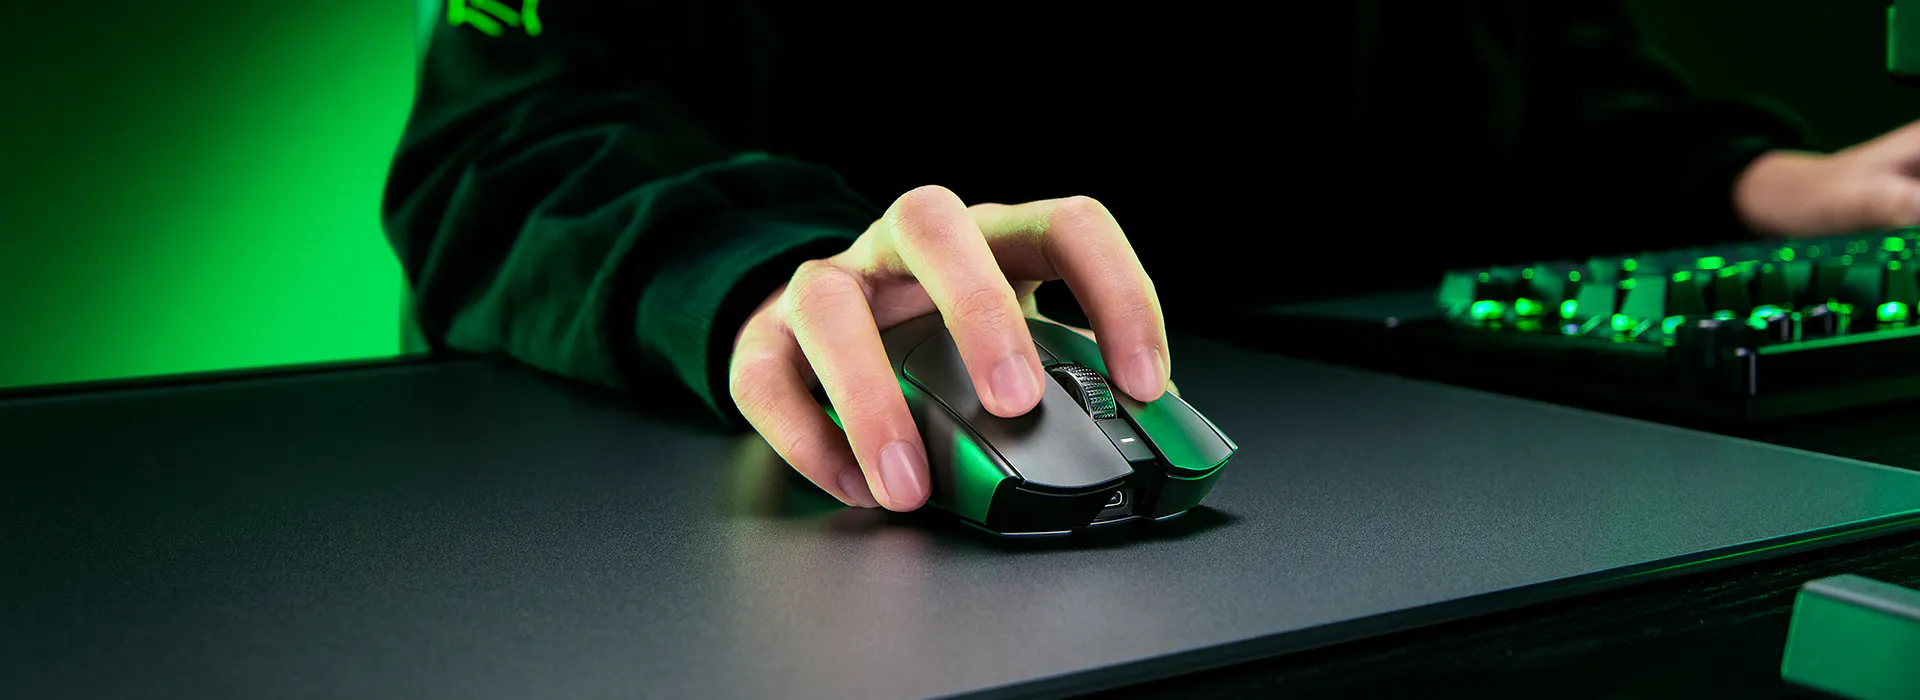 Ra mắt chuột gaming mới, Razer tự tin sản phẩm dành cho nhà vô địch - ảnh 6